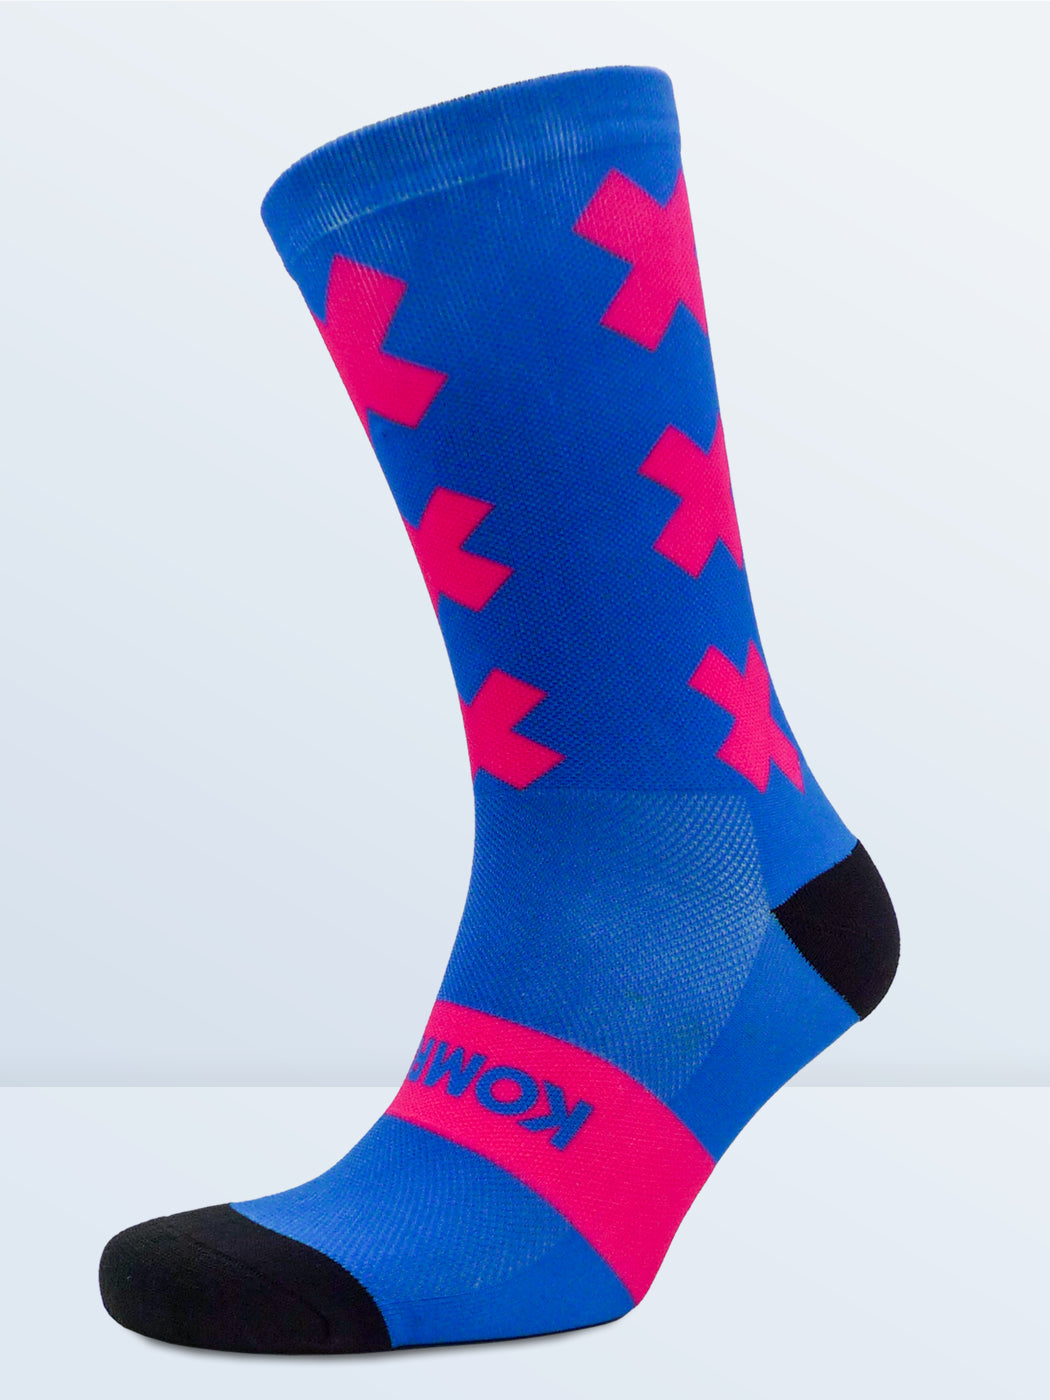 Triple X Socks - Blue & Pink